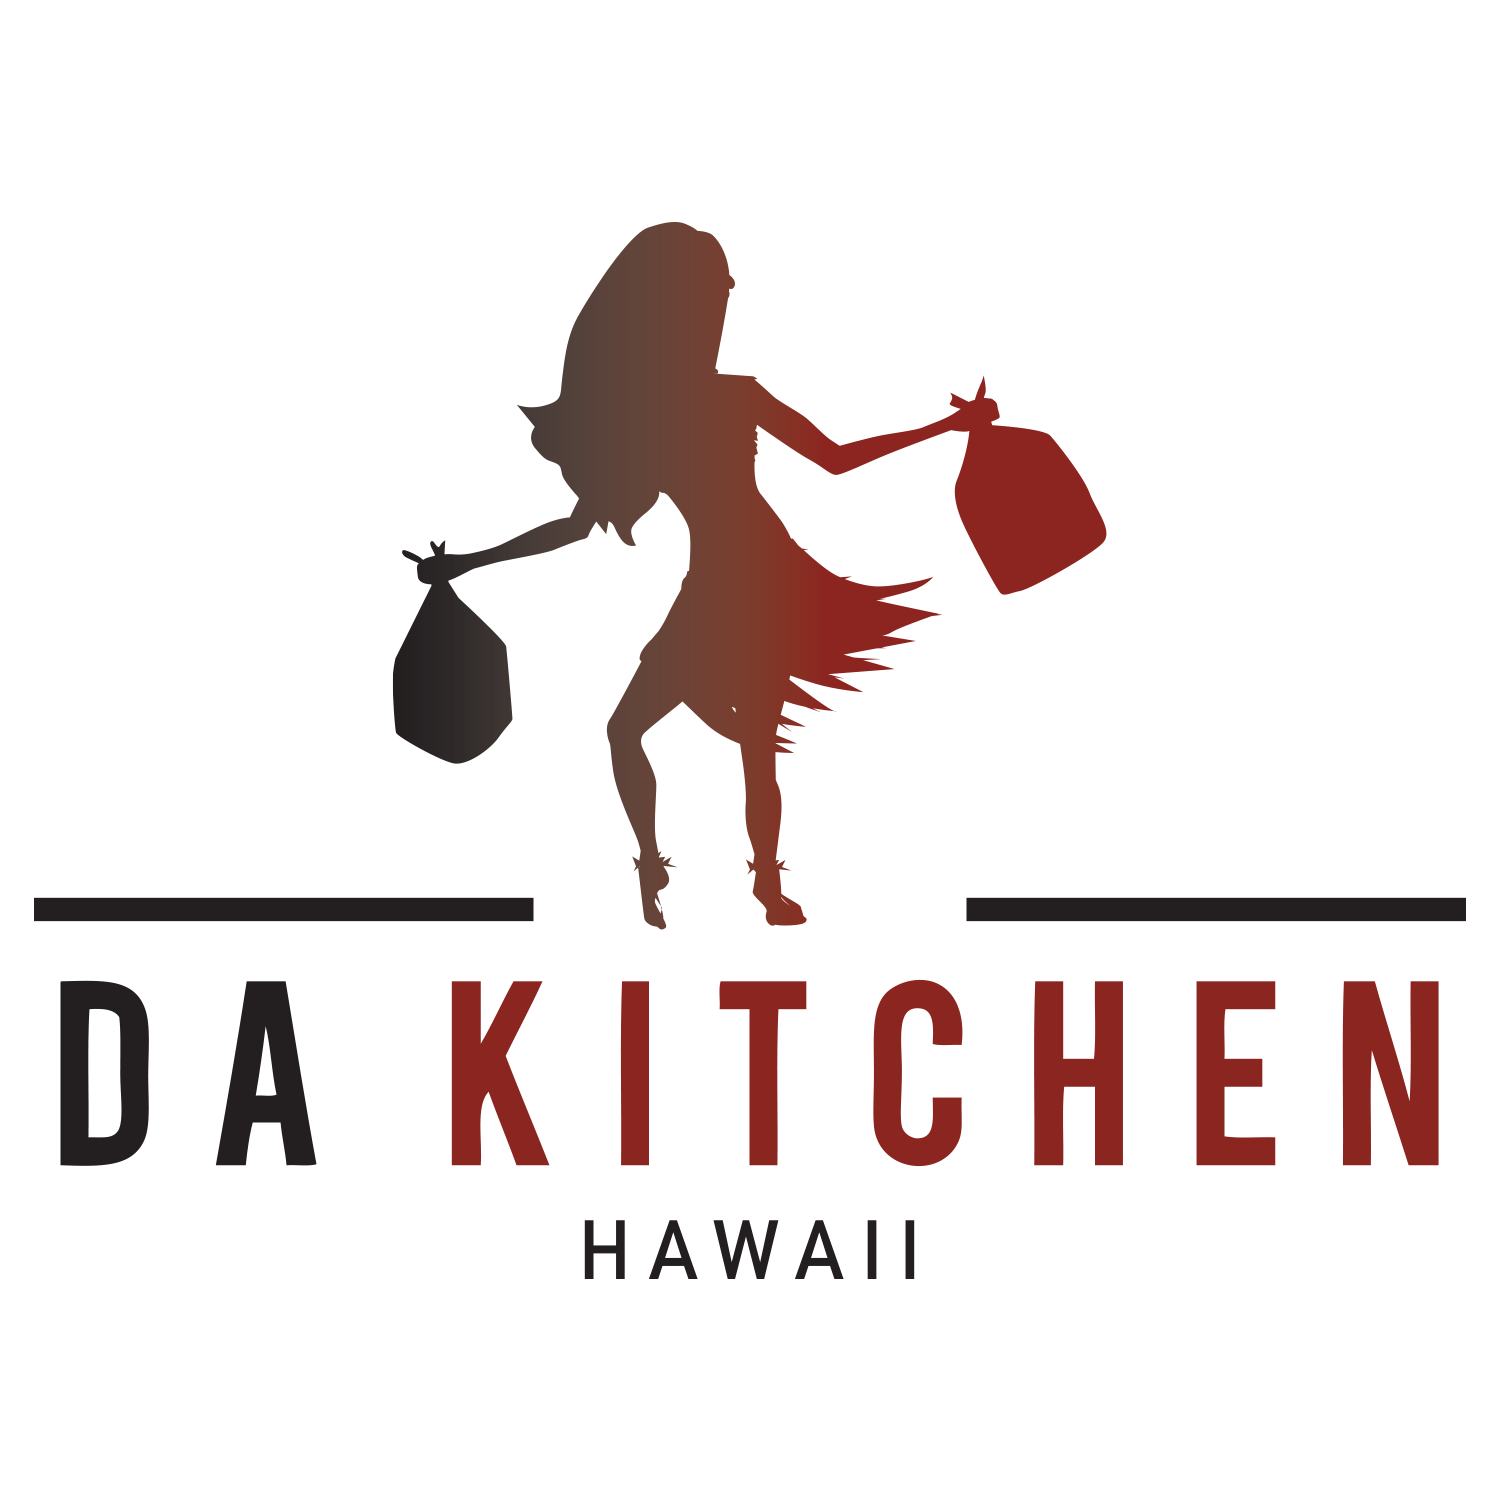 Da Kitchen Logo